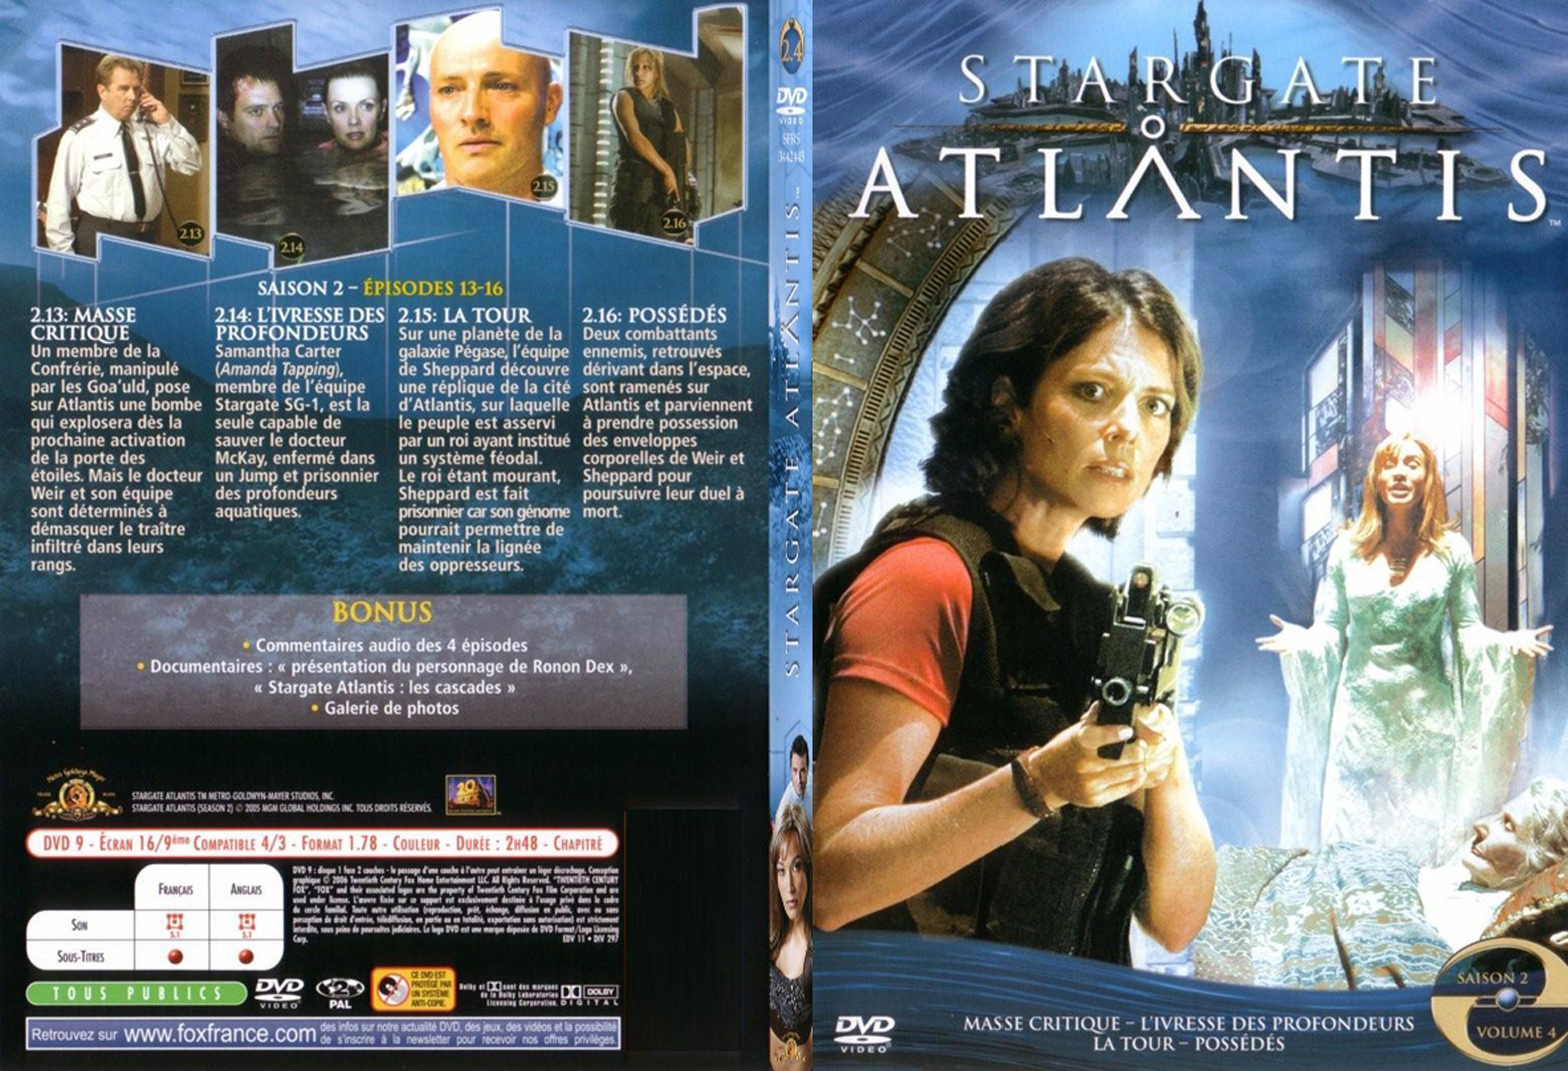 Jaquette DVD Stargate Atlantis saison 2 vol 4 - SLIM